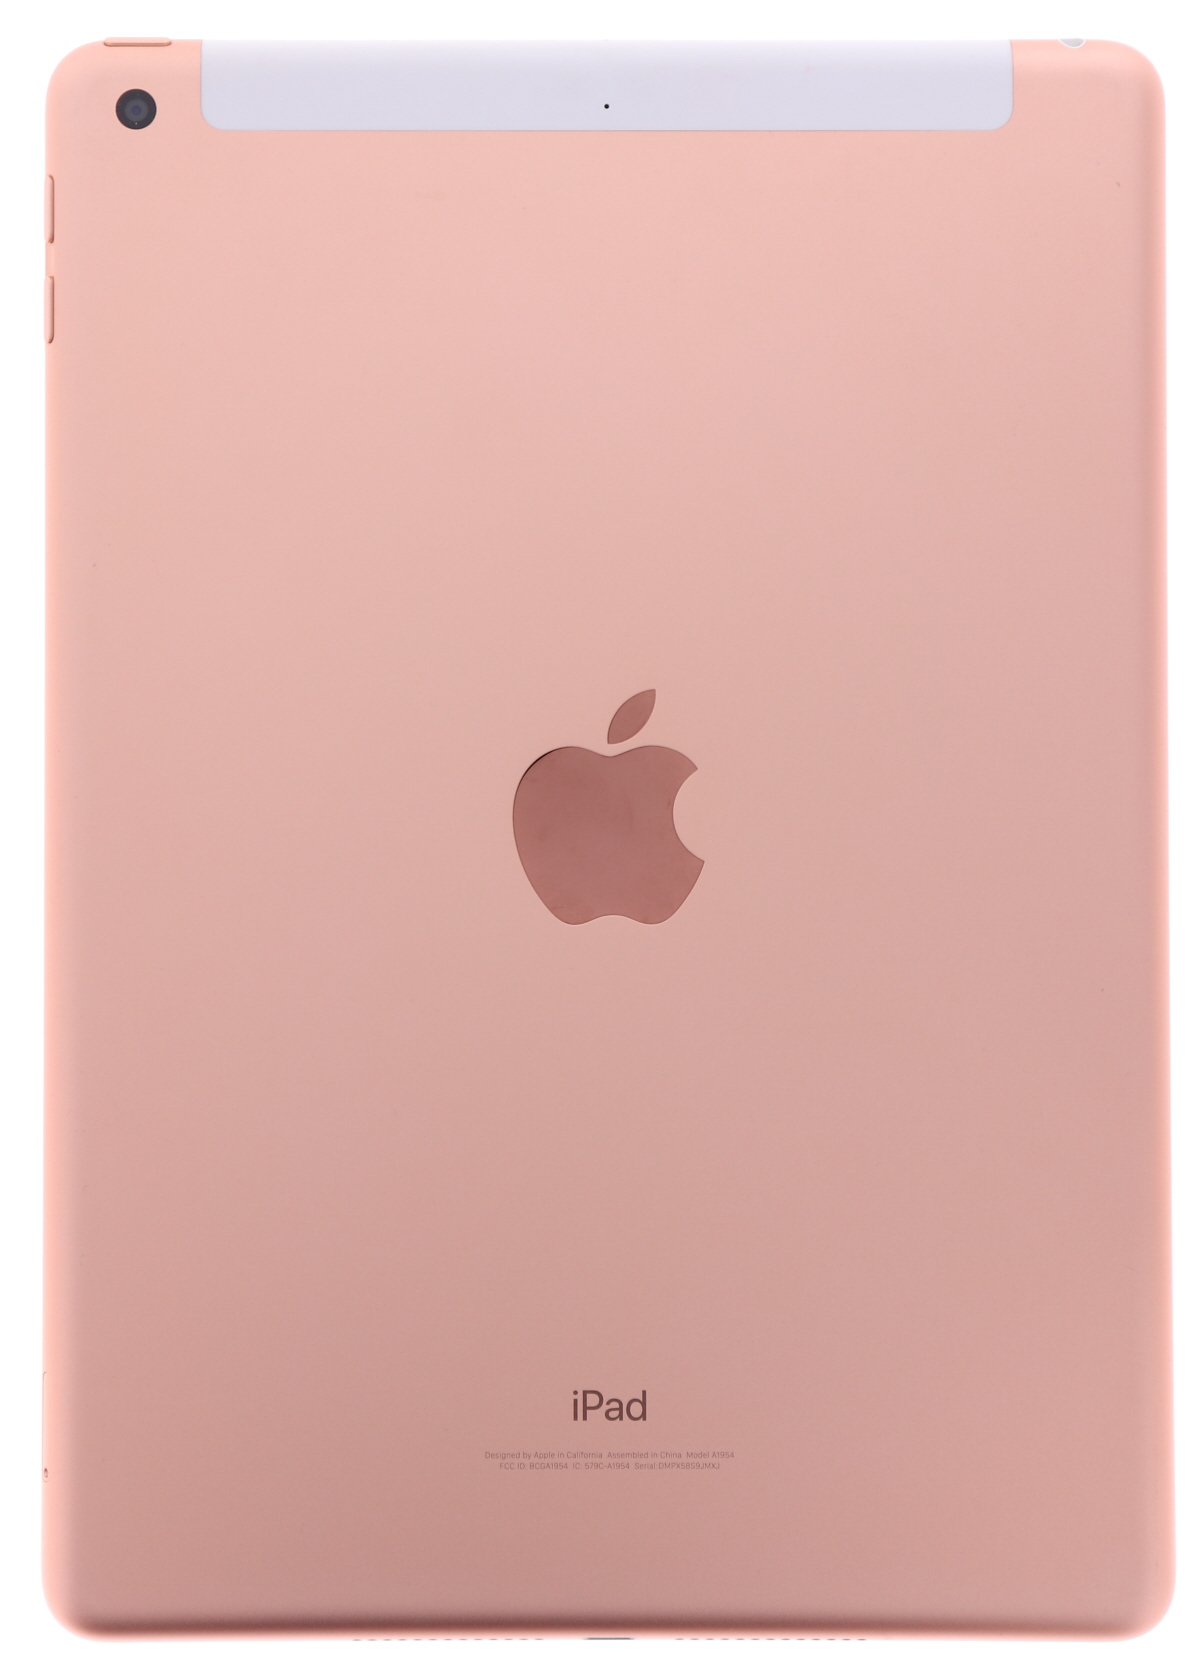 Apple iPad 第6世代 9.7インチ A1954 32GB Wi-Fi+Cellularモデル SIMフリー [Cランク] 中古 タブレット  アイパッド 本体 保証